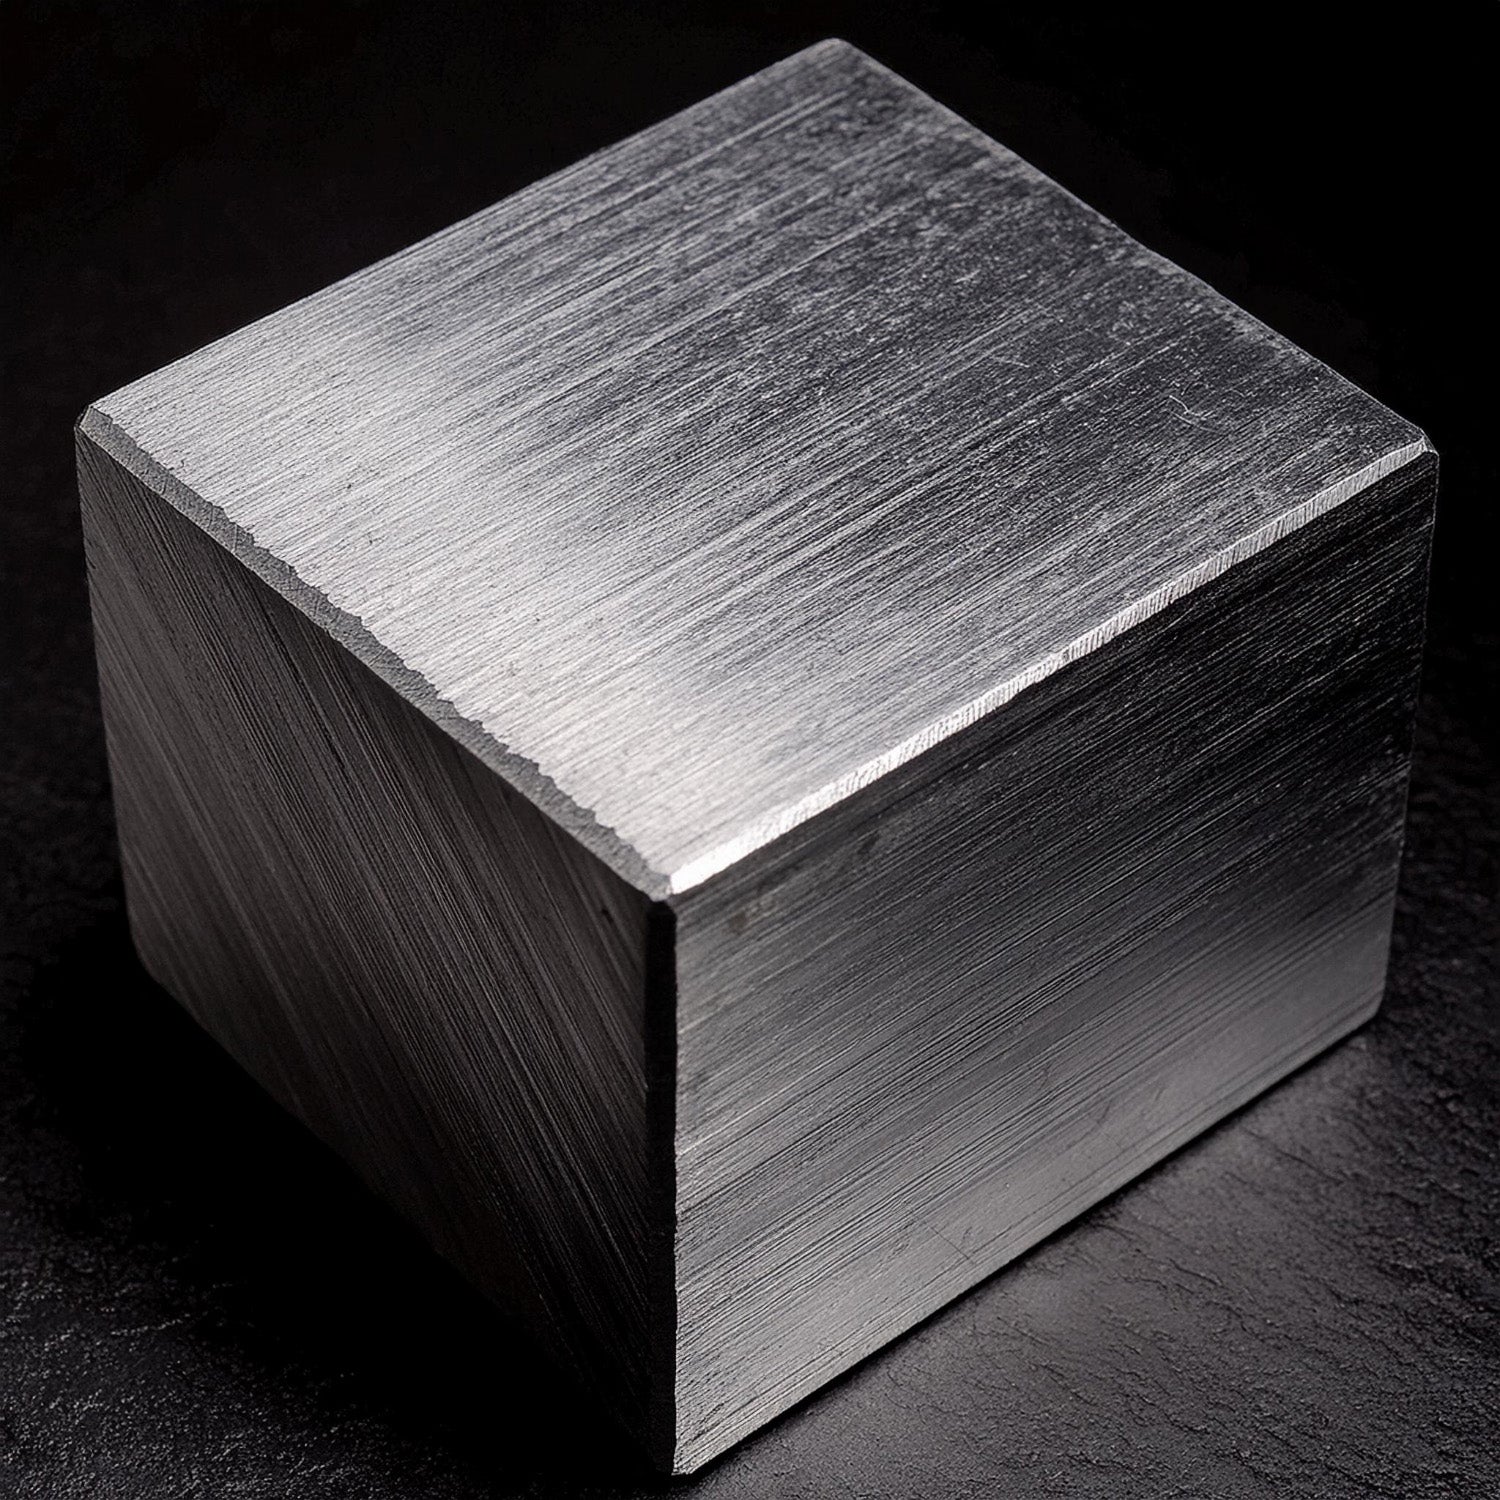 Block of 6063 T6 Aluminum